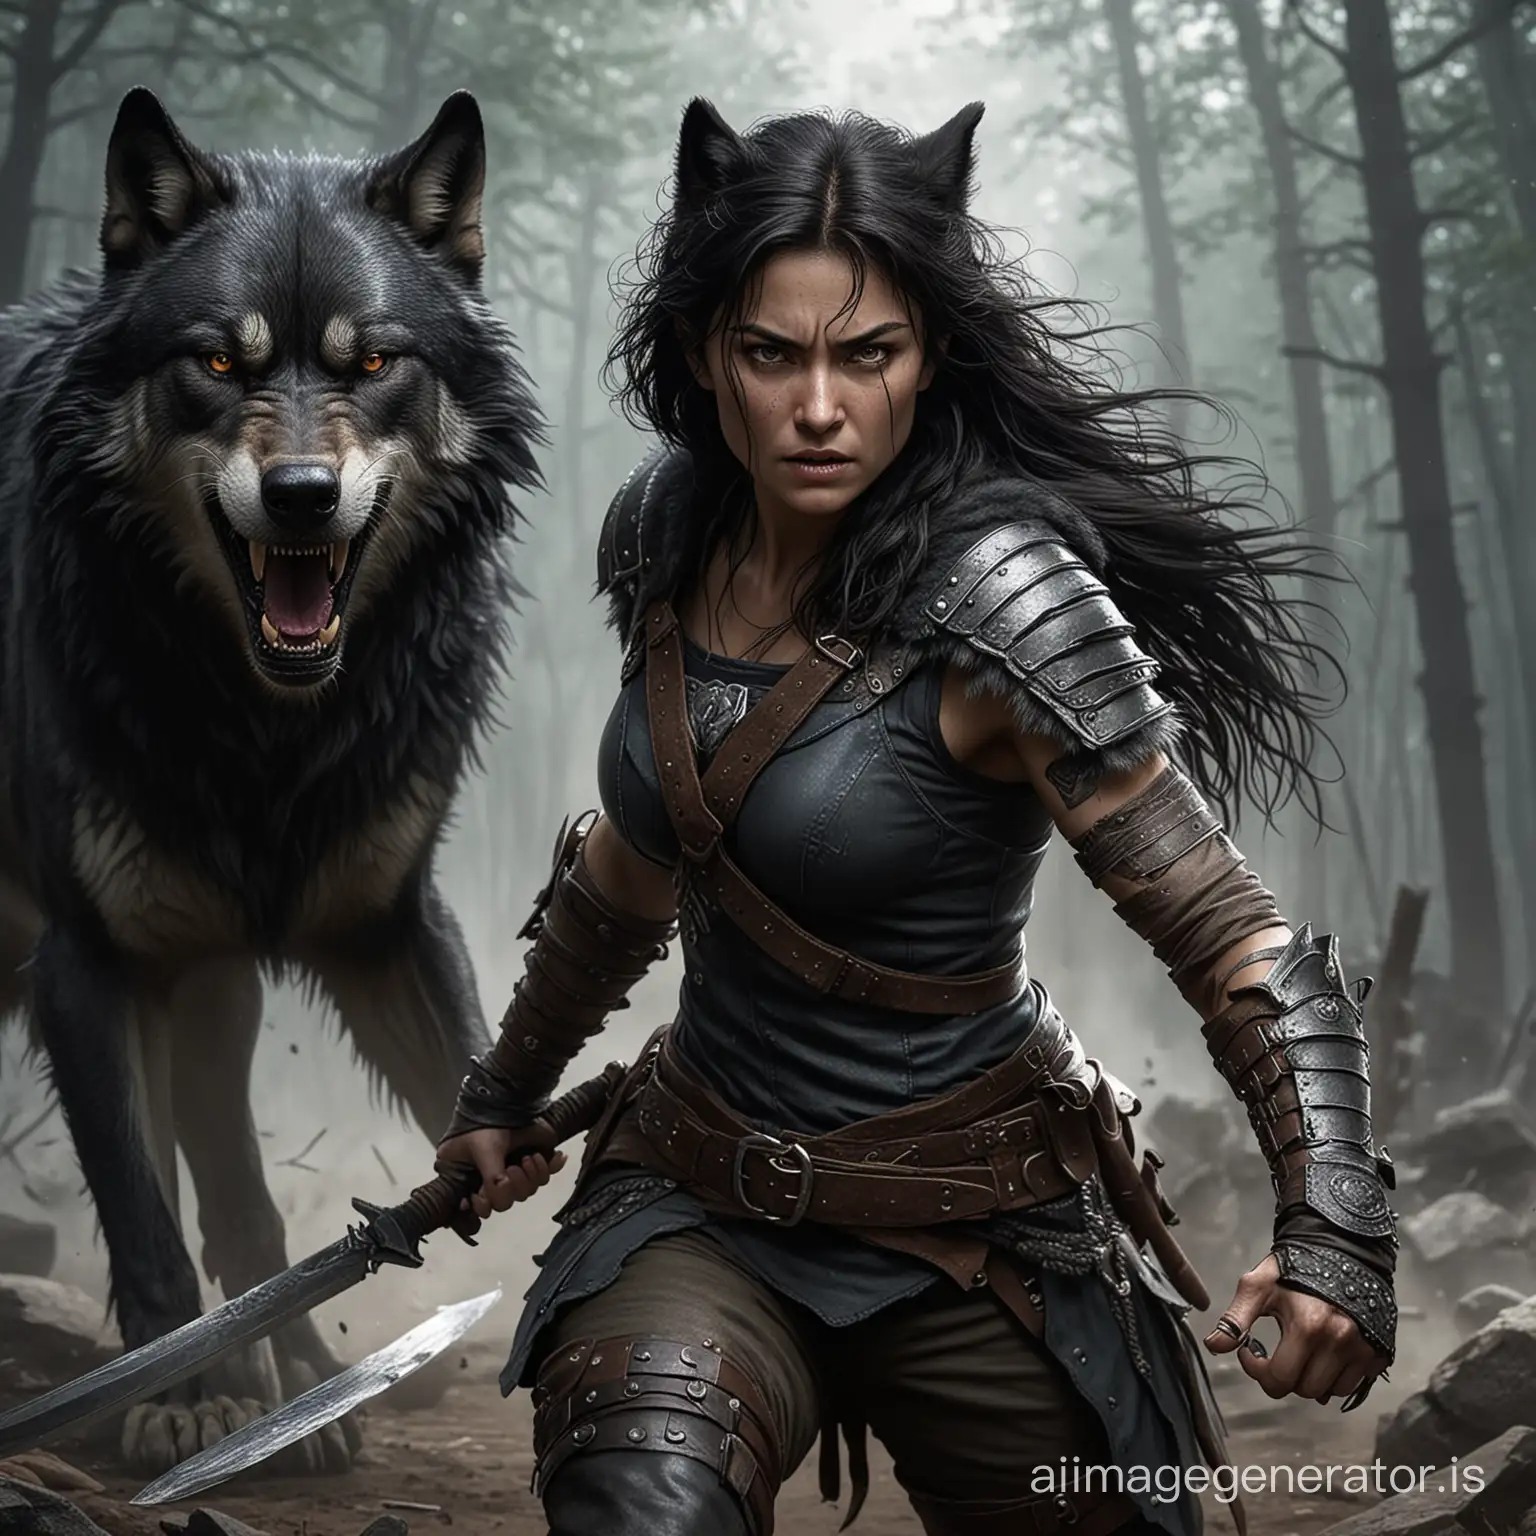 Fierce-She-Wolf-Warrior-DarkHaired-Defender-of-Allies-in-Battle